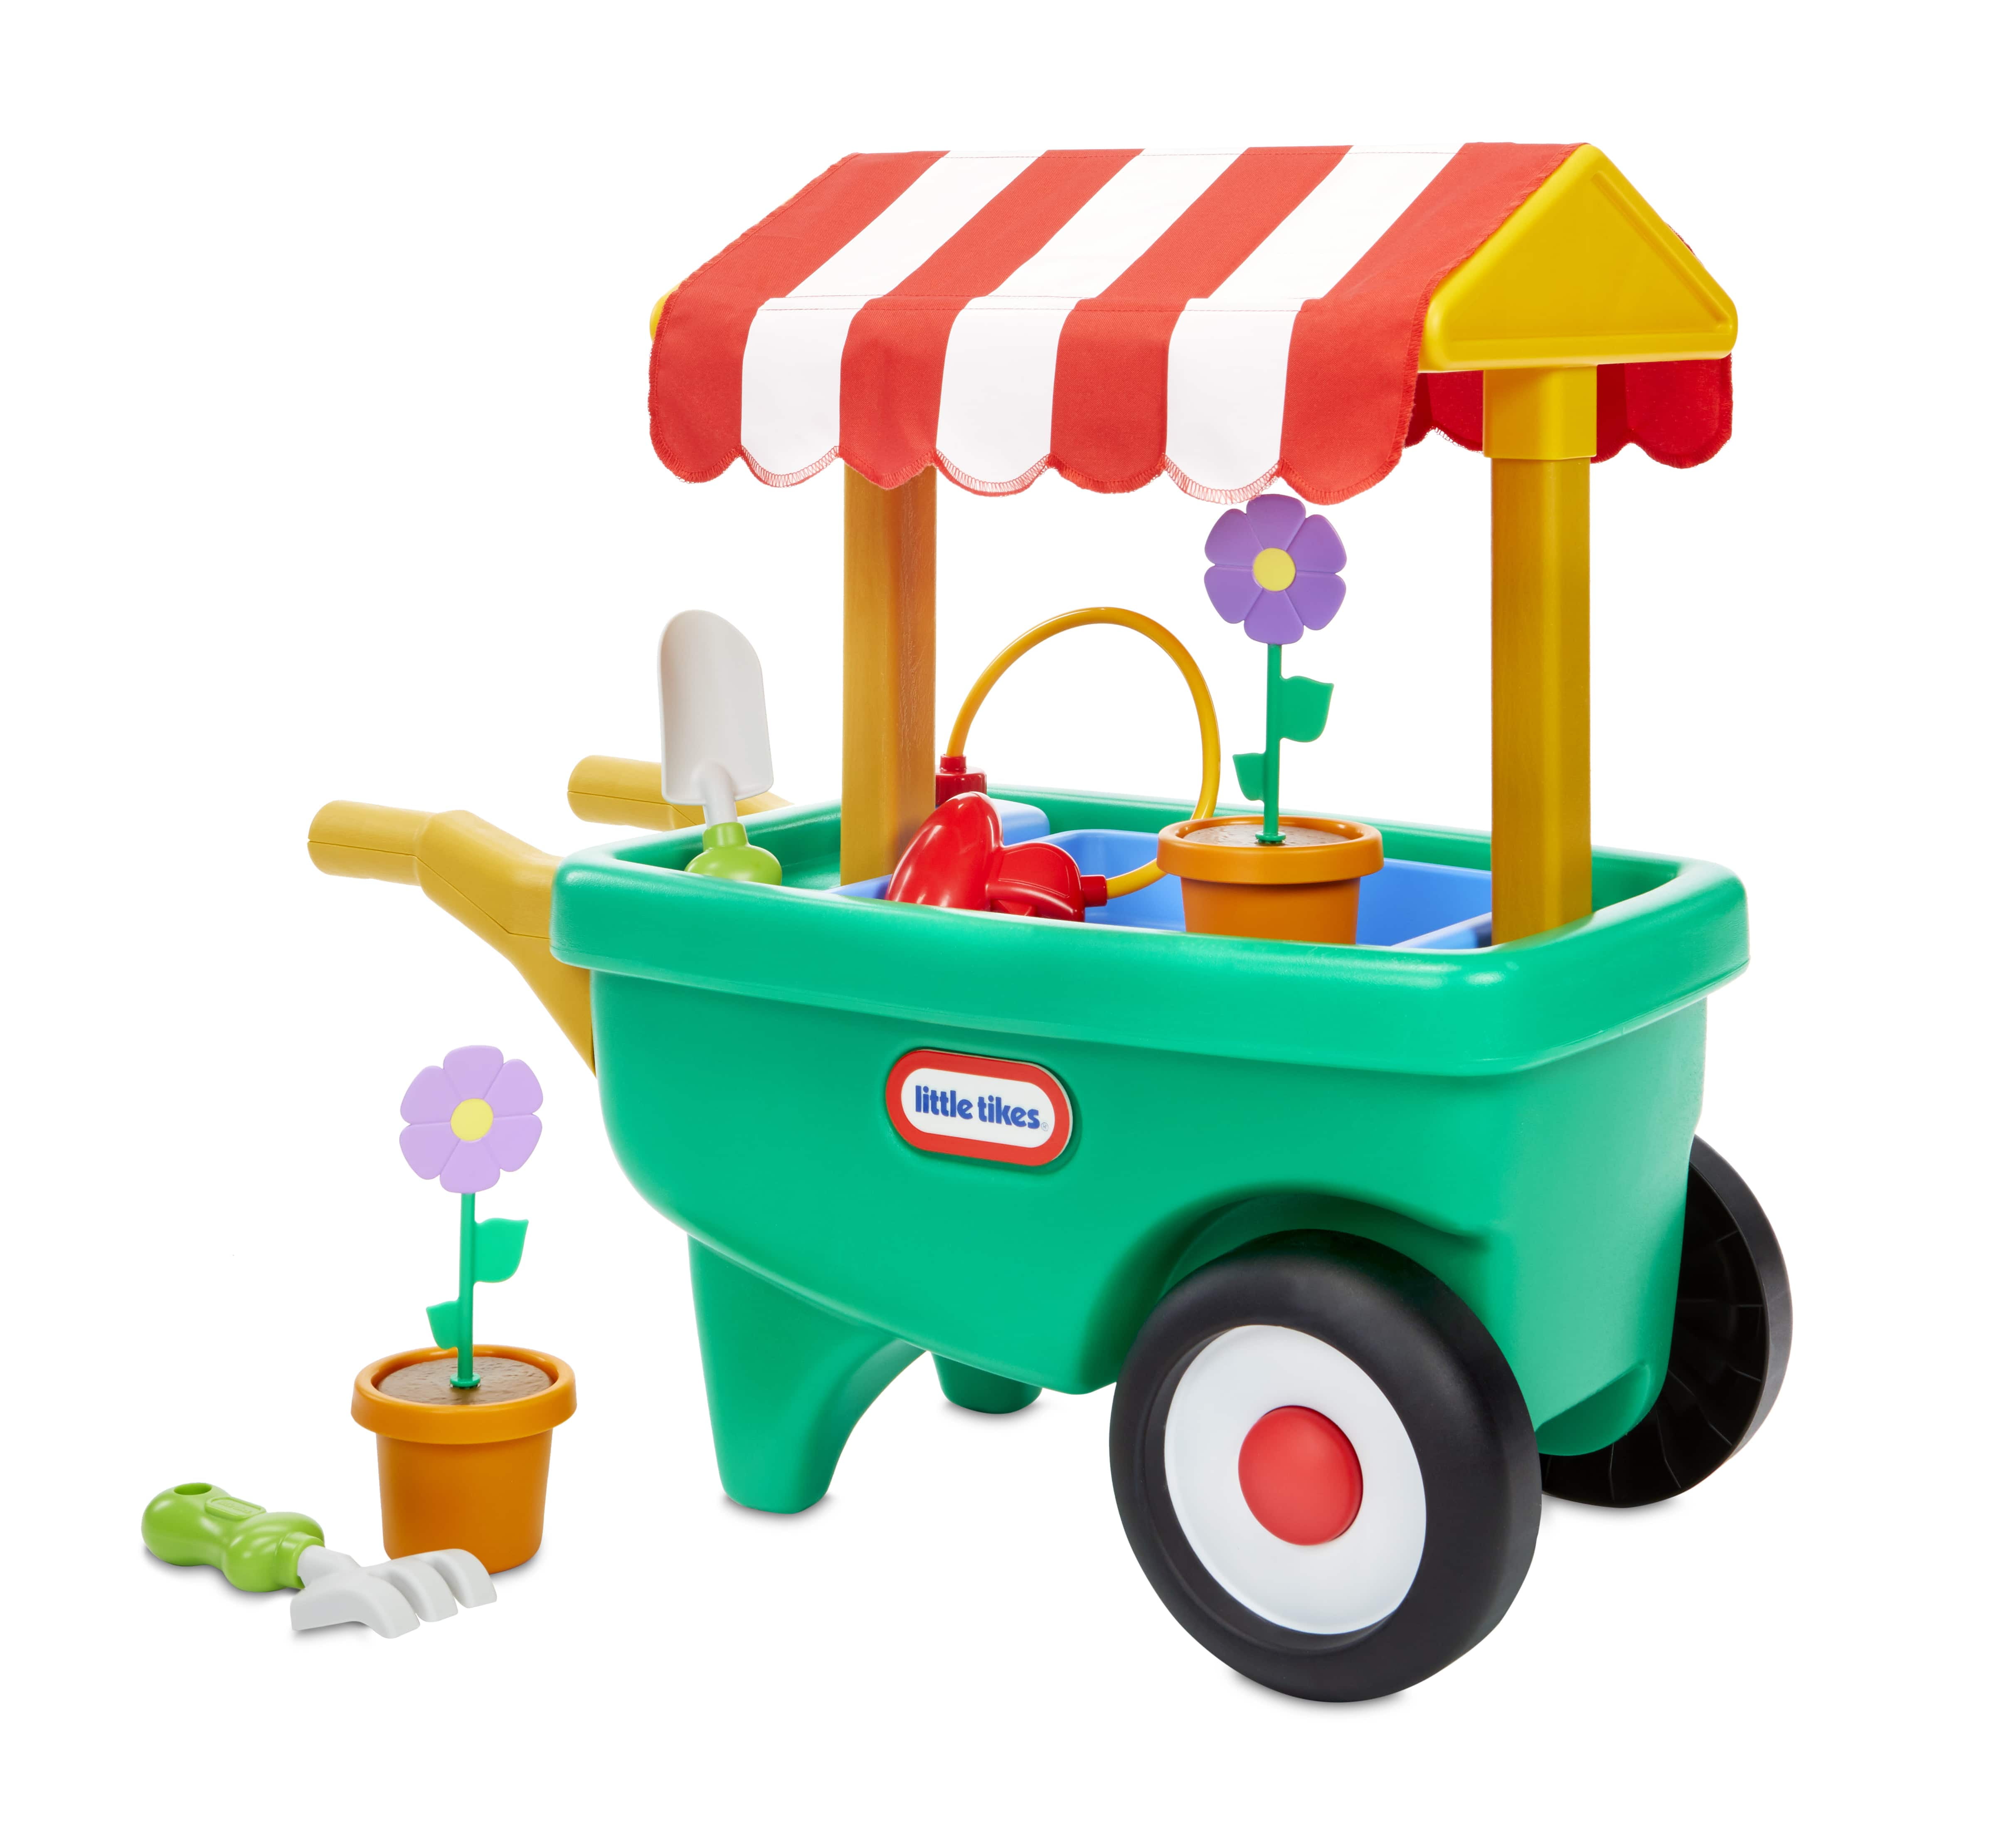 Kids Farm Play Set Mini Portable Toddler Pretend Animal Boy Girl Gift Toy New 